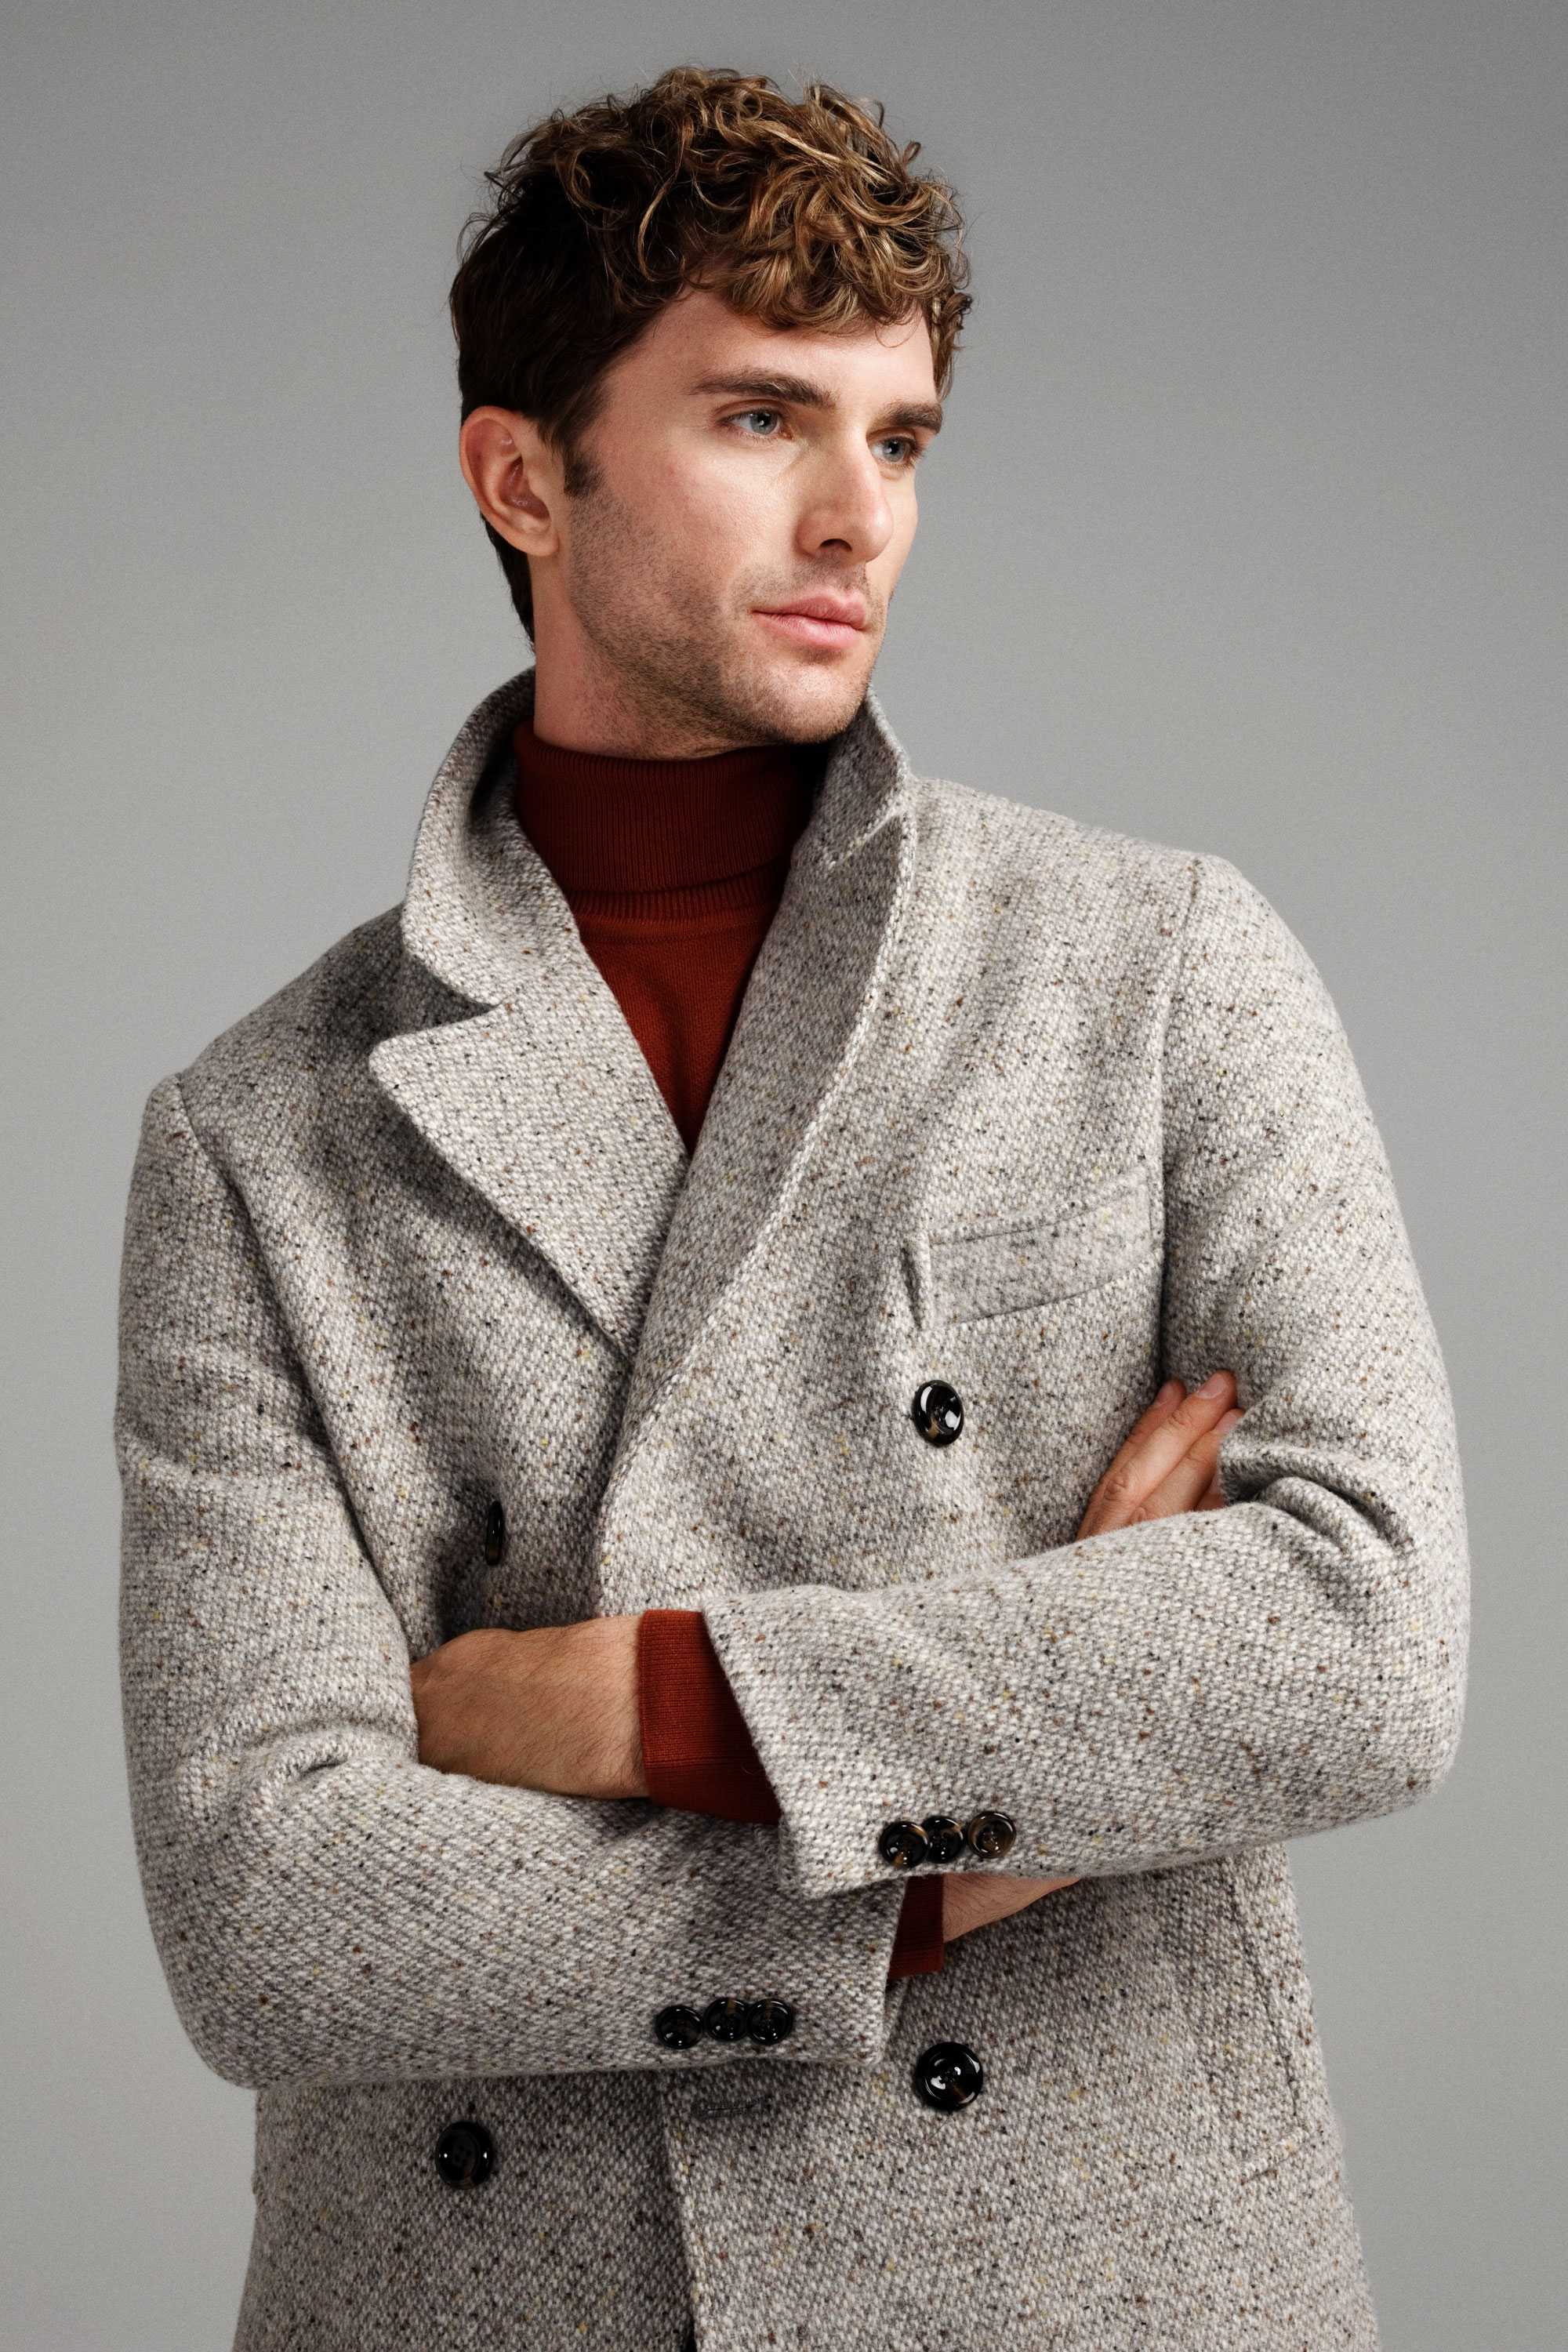 Пальто мужское двубортное светло-серое, буклированное с цветными вкраплениями